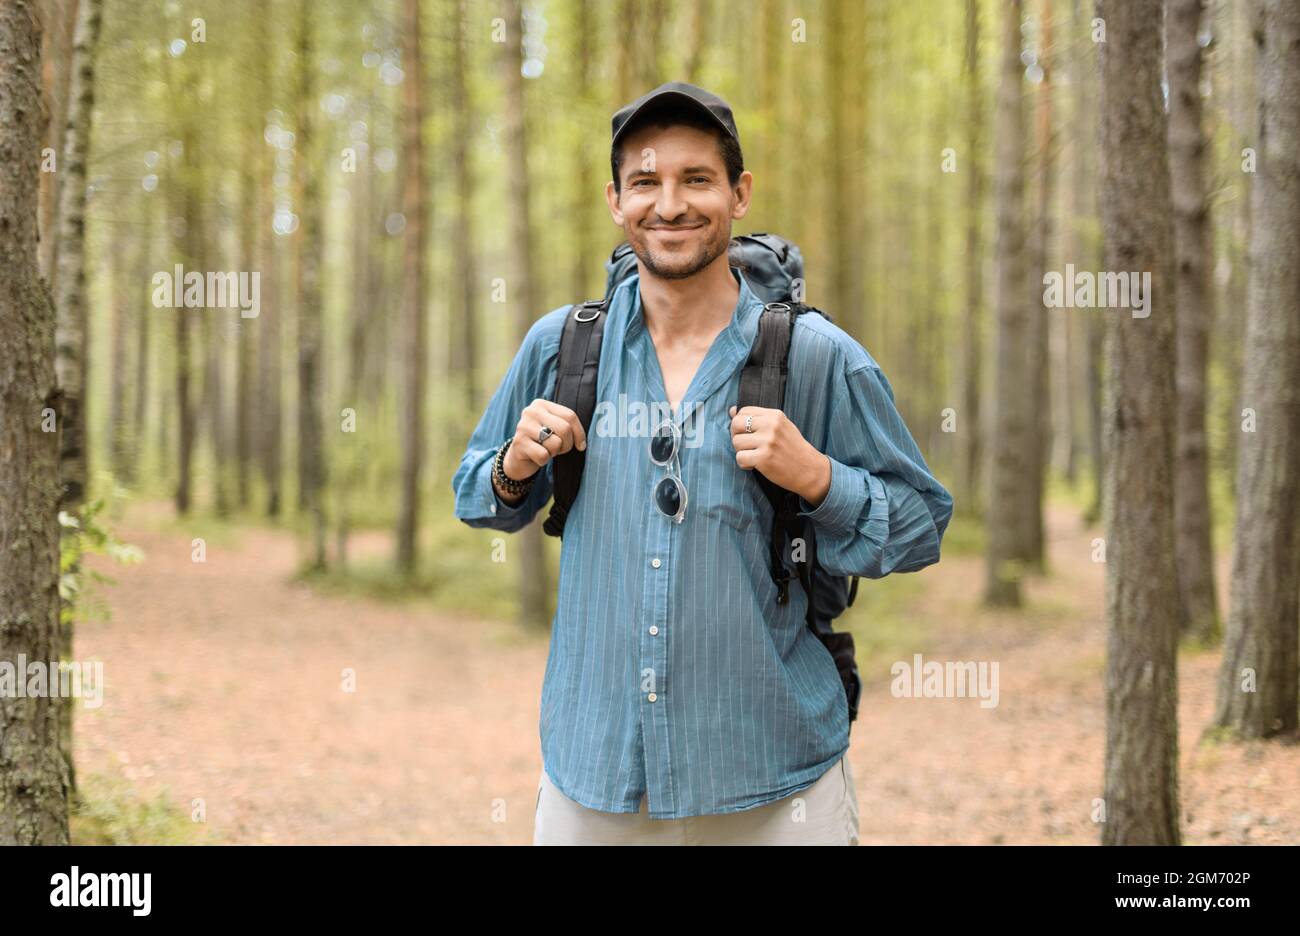 Hombre sonriente, de 40 años, con su mochila turística está parado en un bosque. Foto de stock